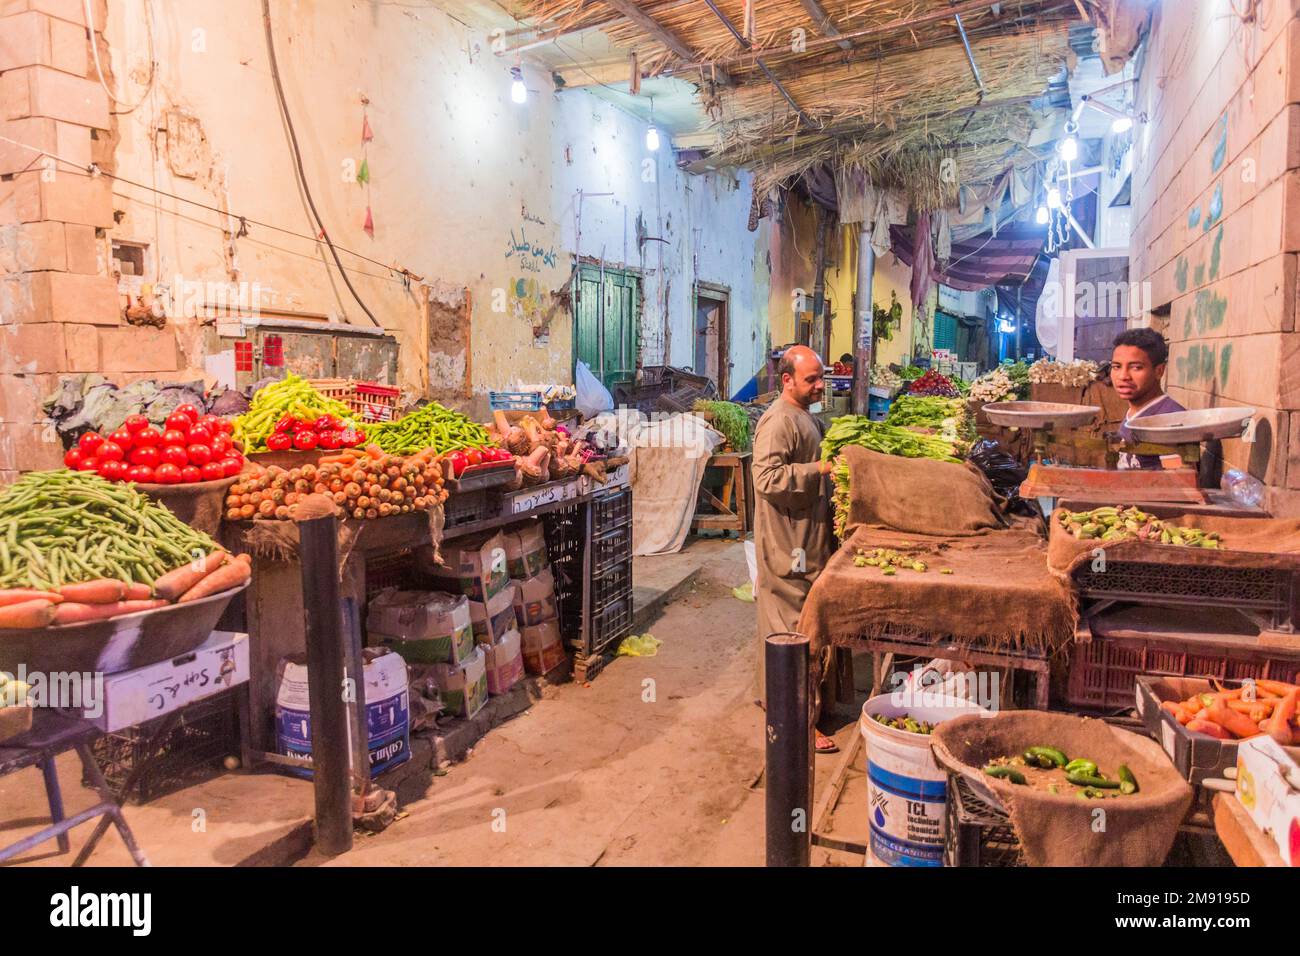 ASWAN, EGYPT: FEB 13, 2019: View of the old souk (market) in Aswan, Egypt Stock Photo